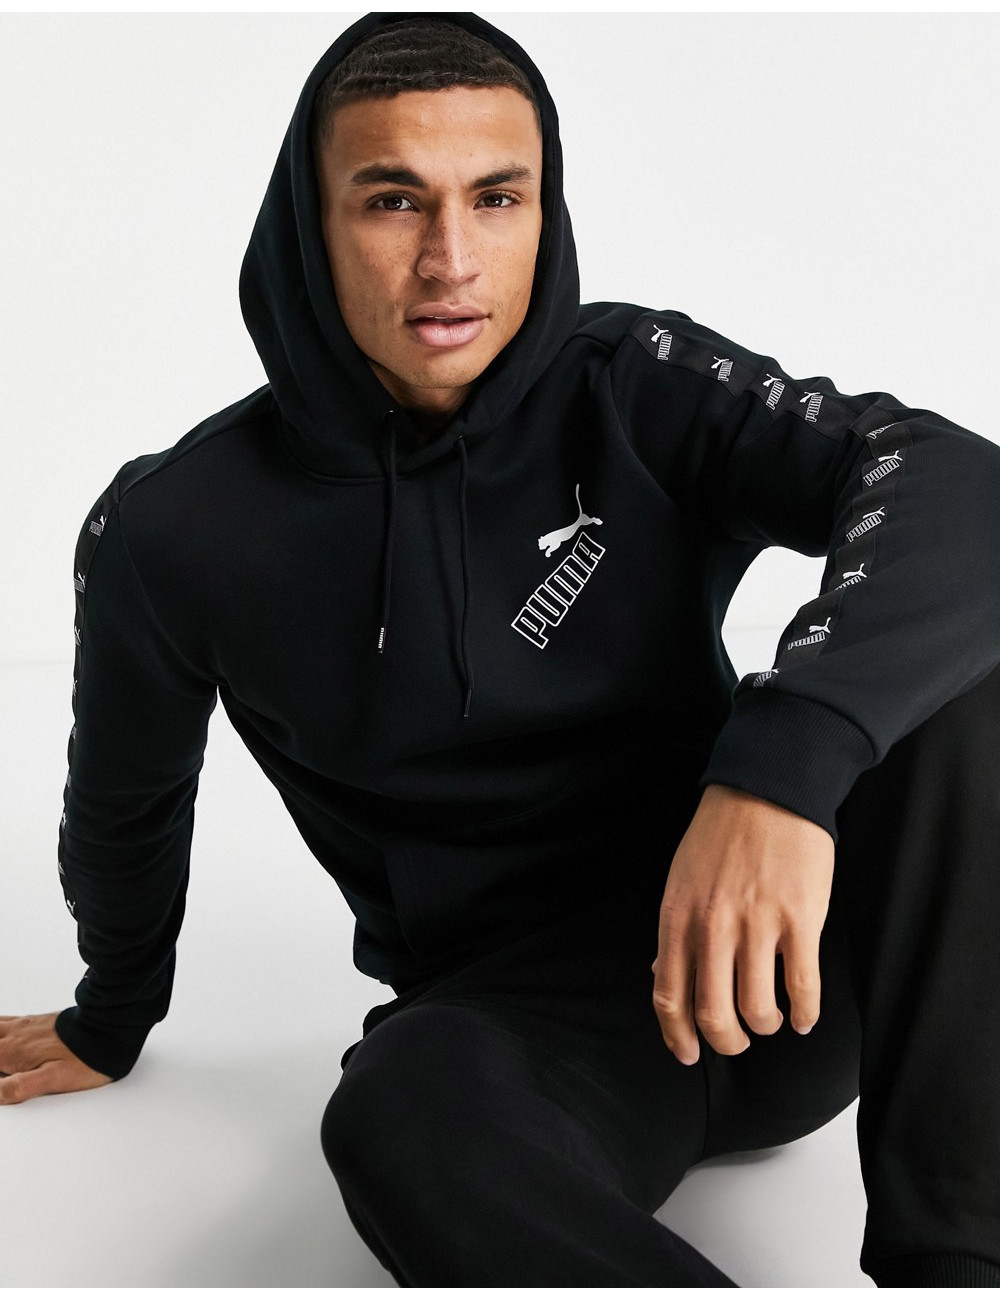 Puma Amplified hoodie in black